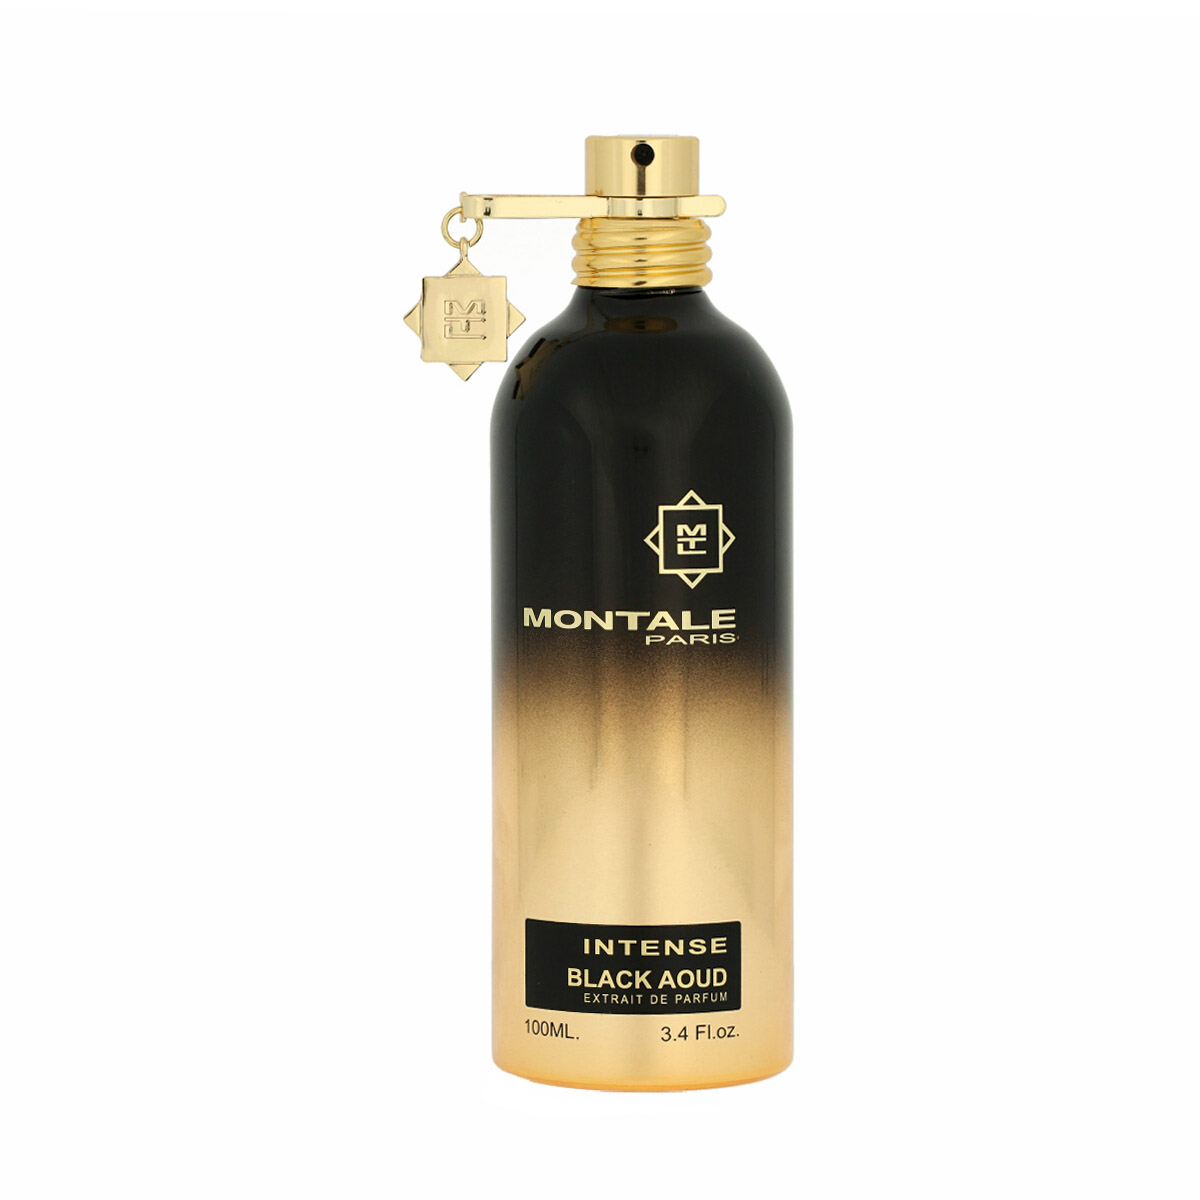 Montale Paris Intense Black Aoud Extrait De Parfum 15 ml NIŠINIAI kvepalų mėginukas (atomaizeris) Unisex Parfum